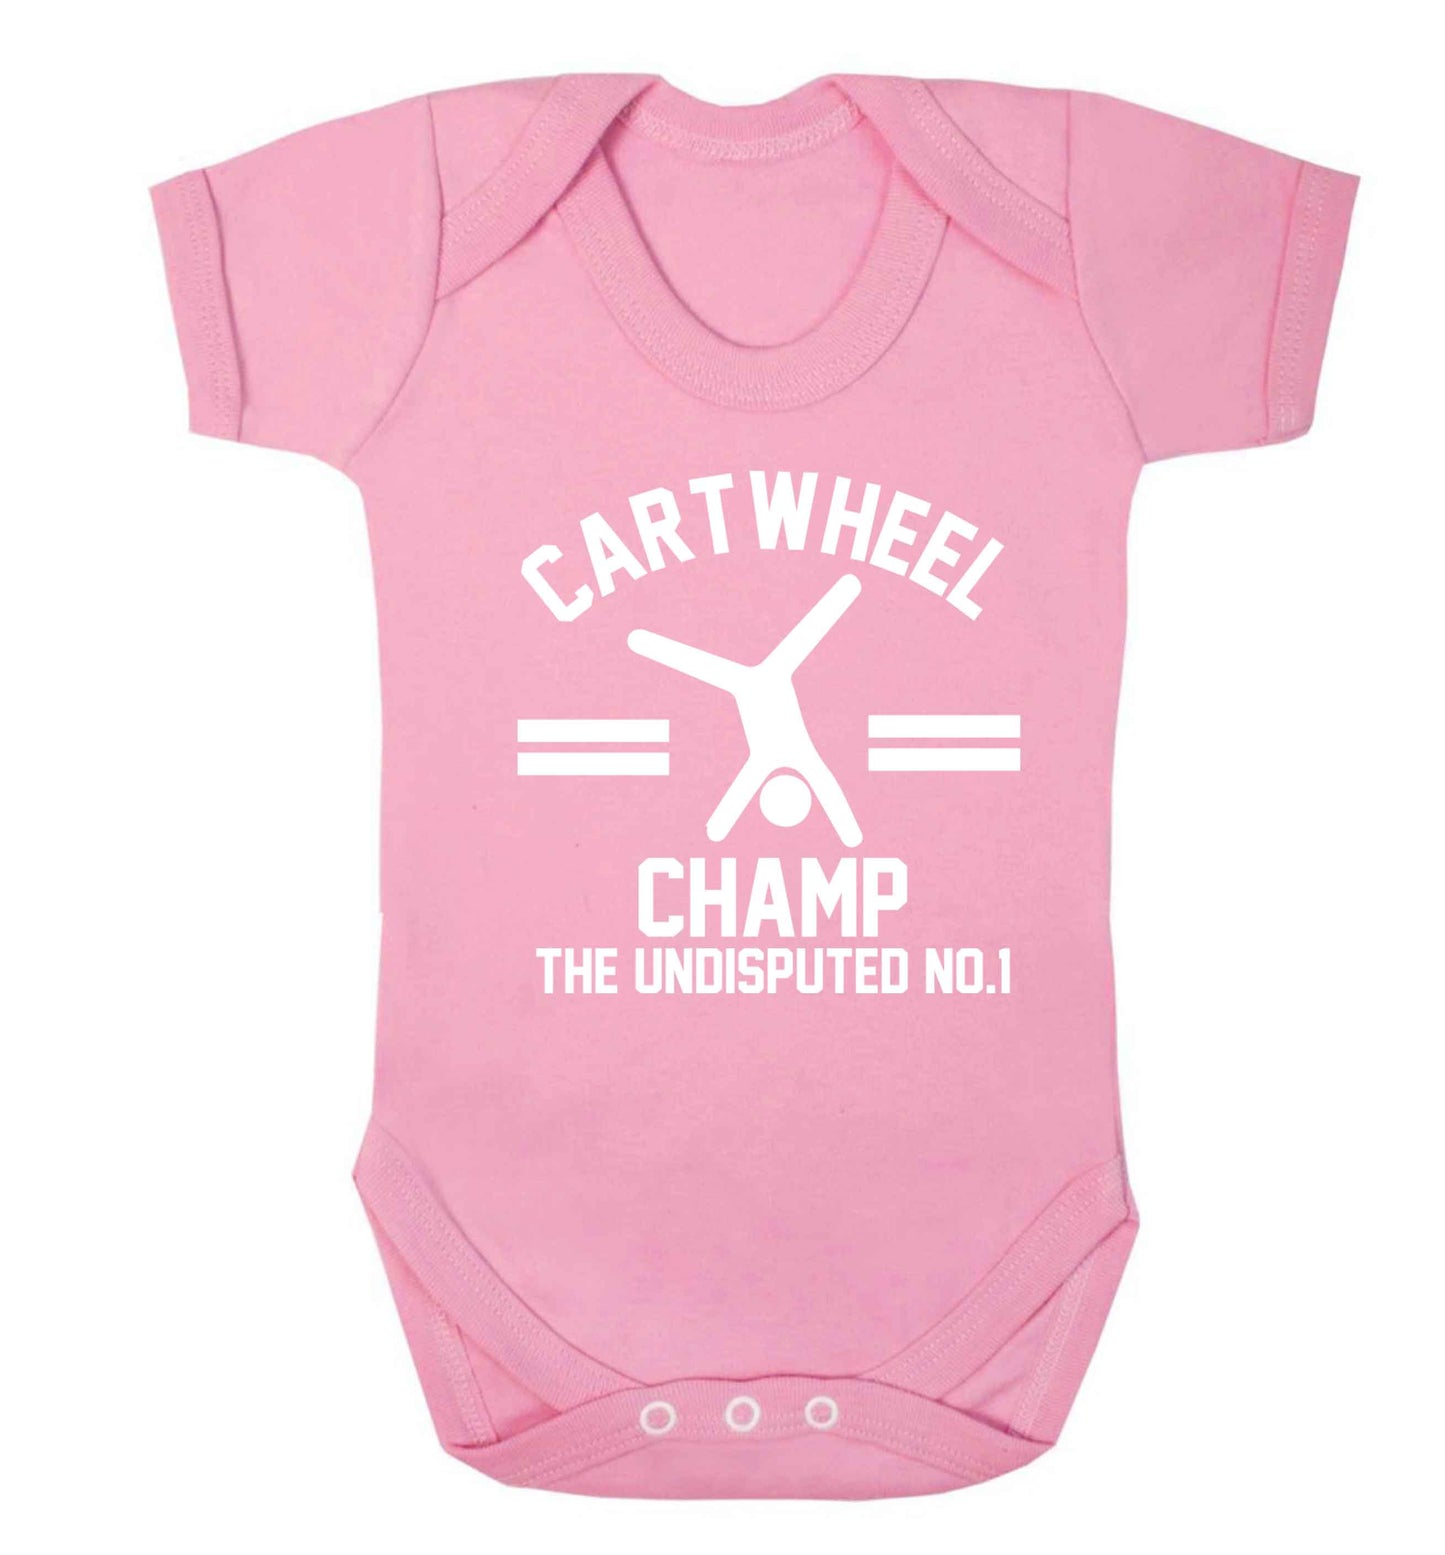 Undisputed cartwheel championship no.1  Baby Vest pale pink 18-24 months